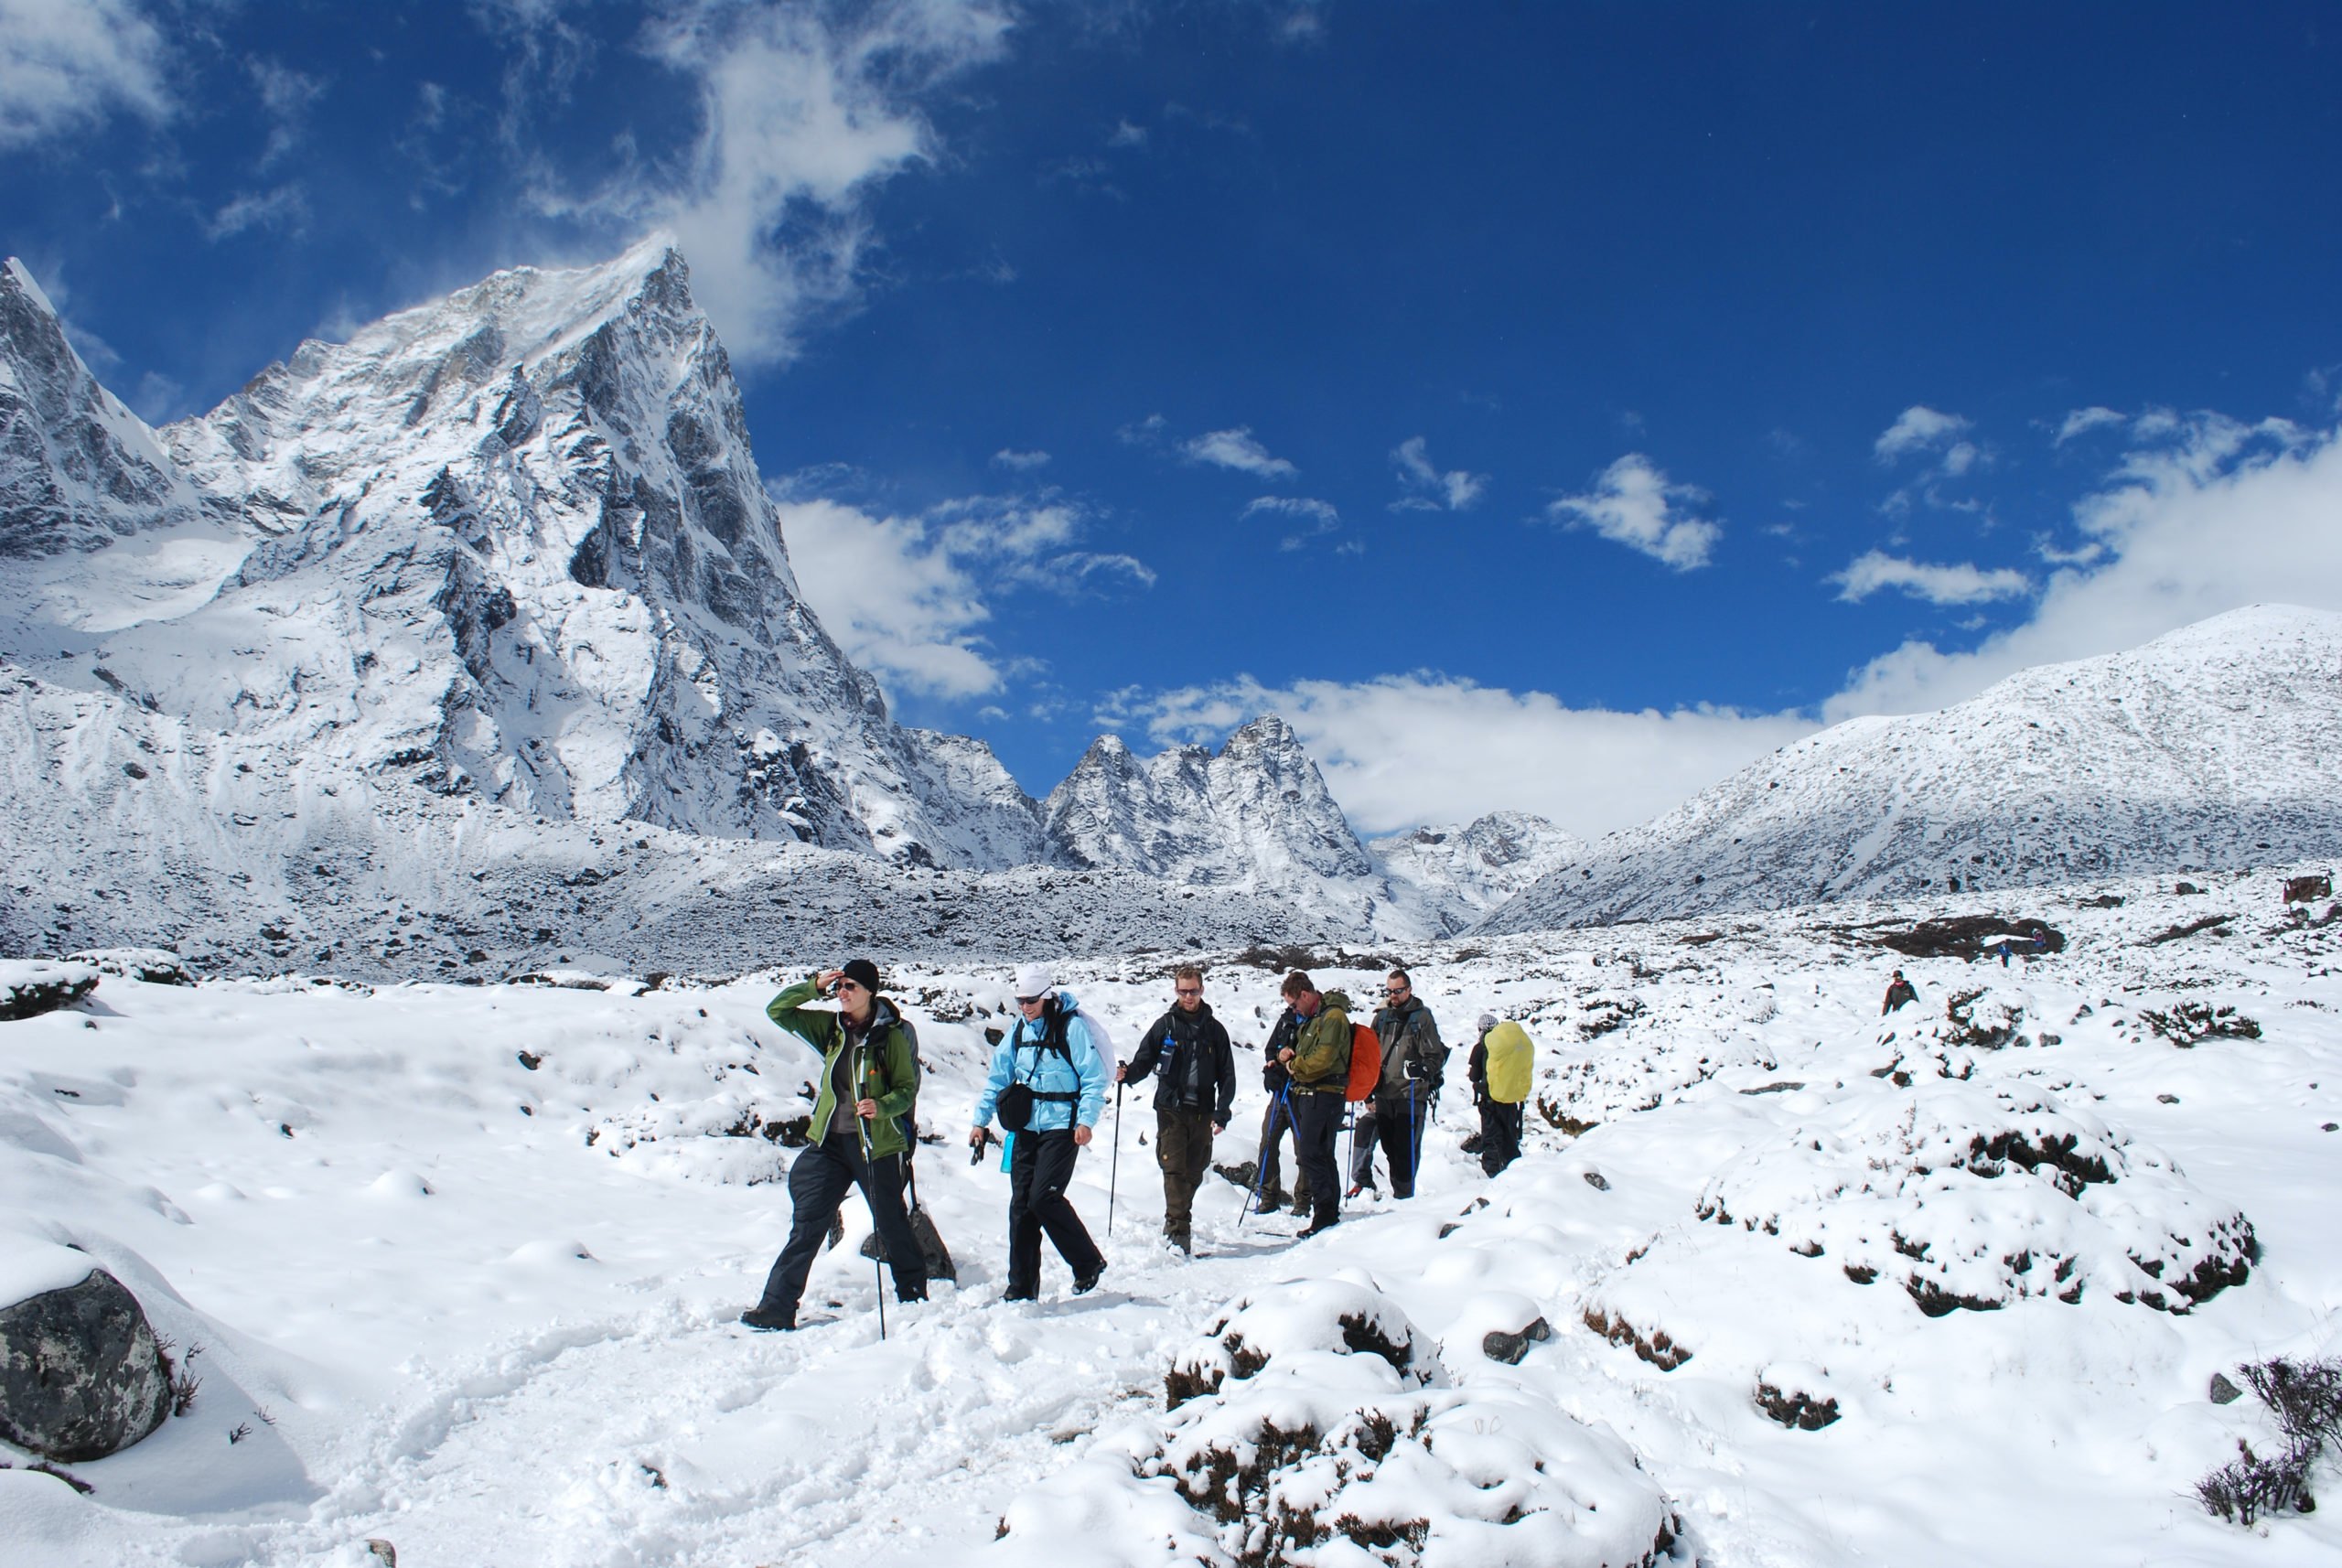 på vandringsresa med vandring i snö i Nepal